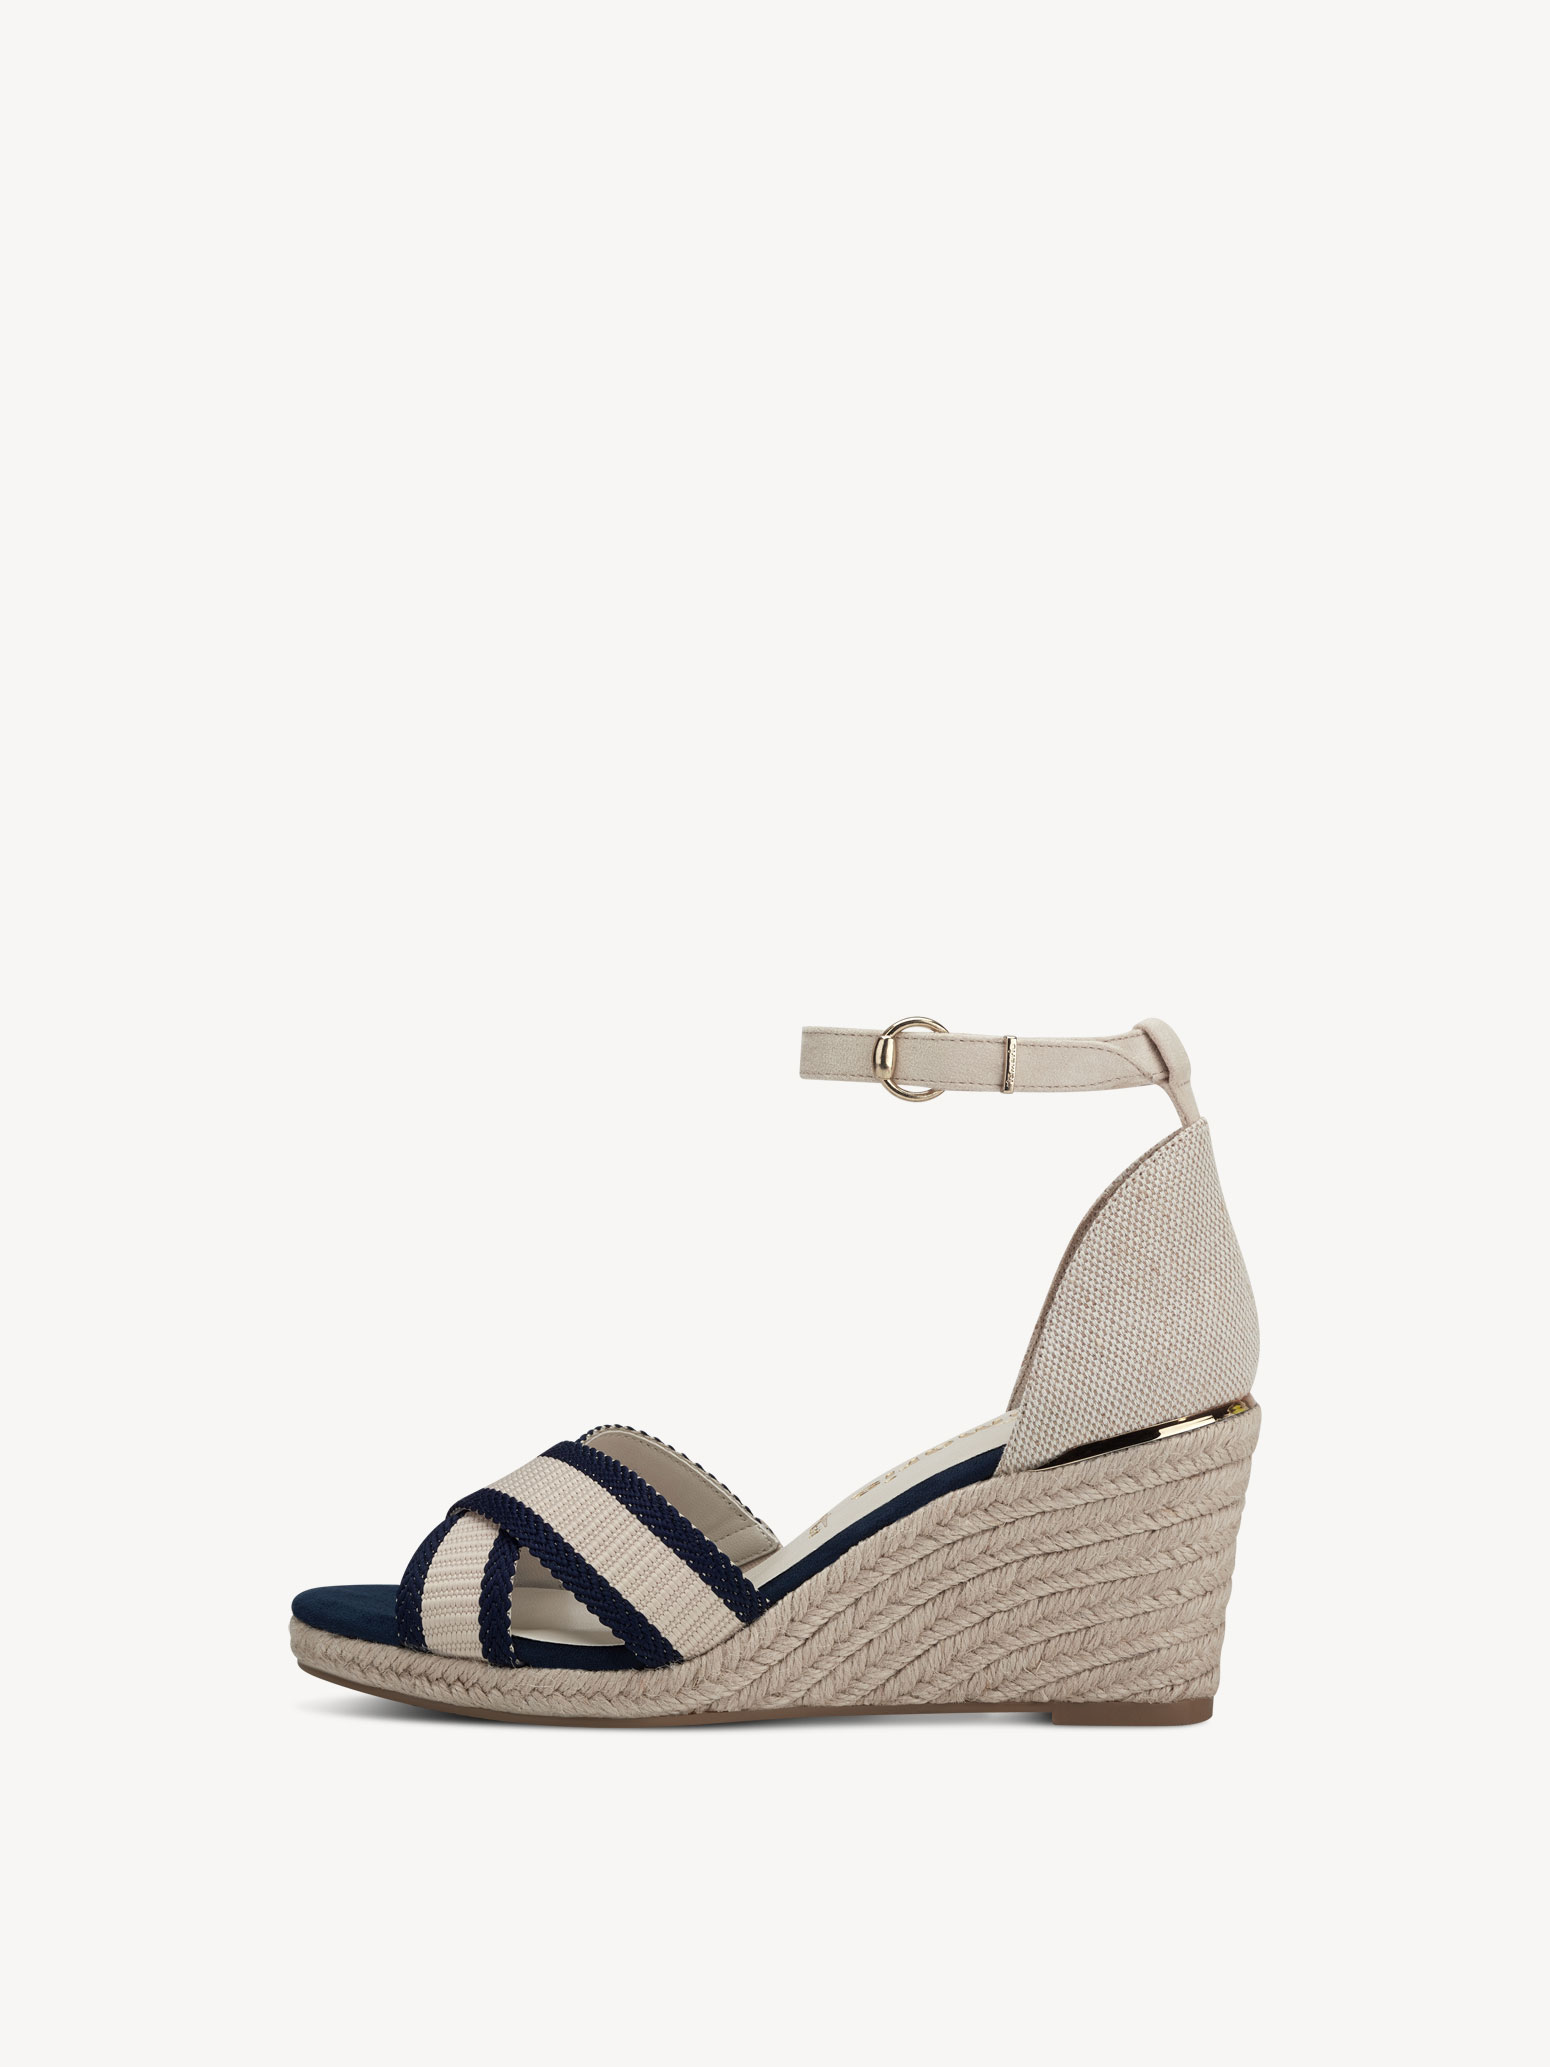 Forfærdeligt nødvendighed Indsigt Heeled sandal - blue 1-1-28343-20-805: Buy Tamaris Sandals online!